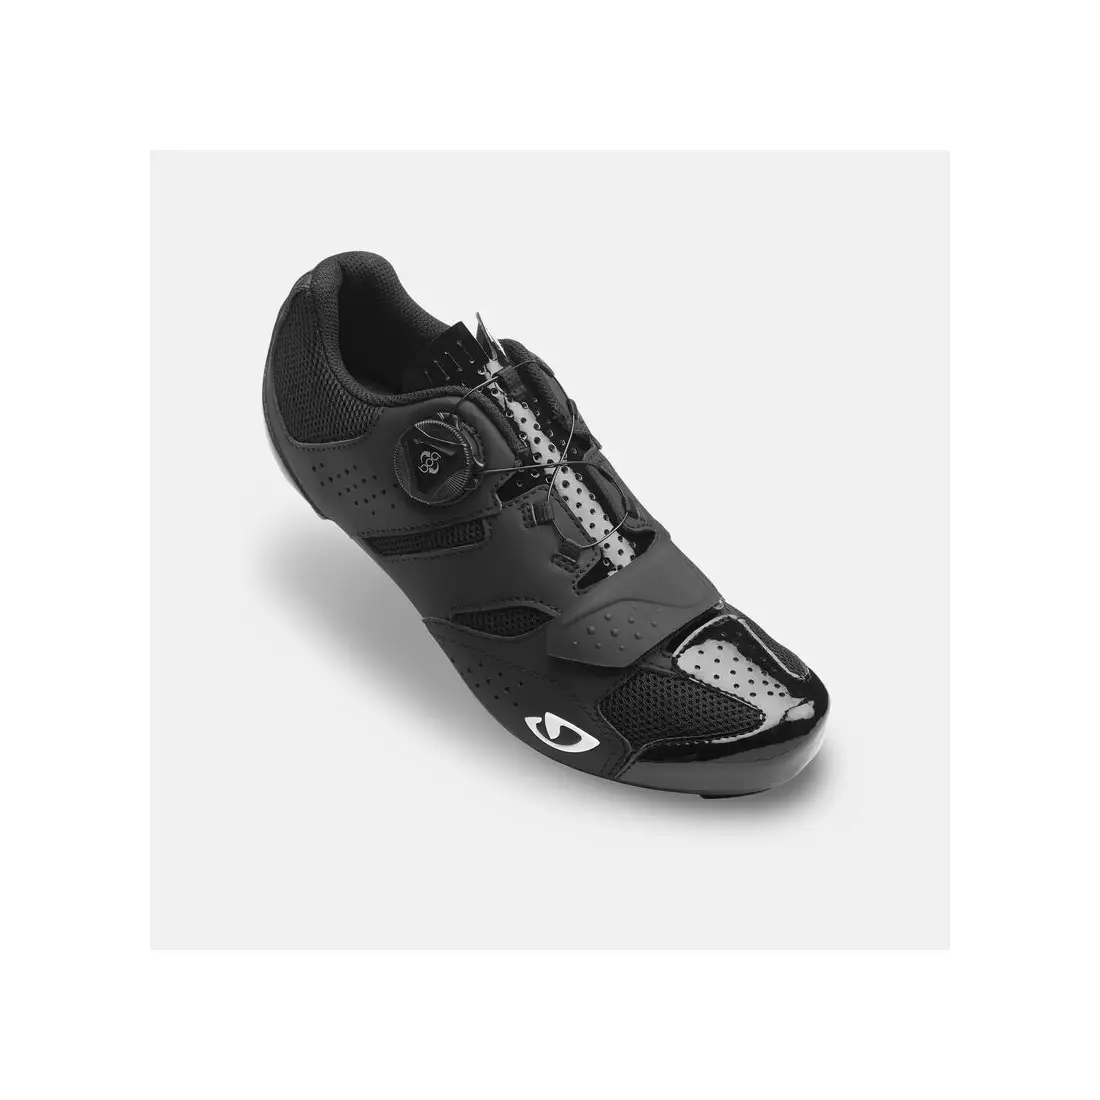 GIRO dámské cyklistické boty savix II w black GR-7126203